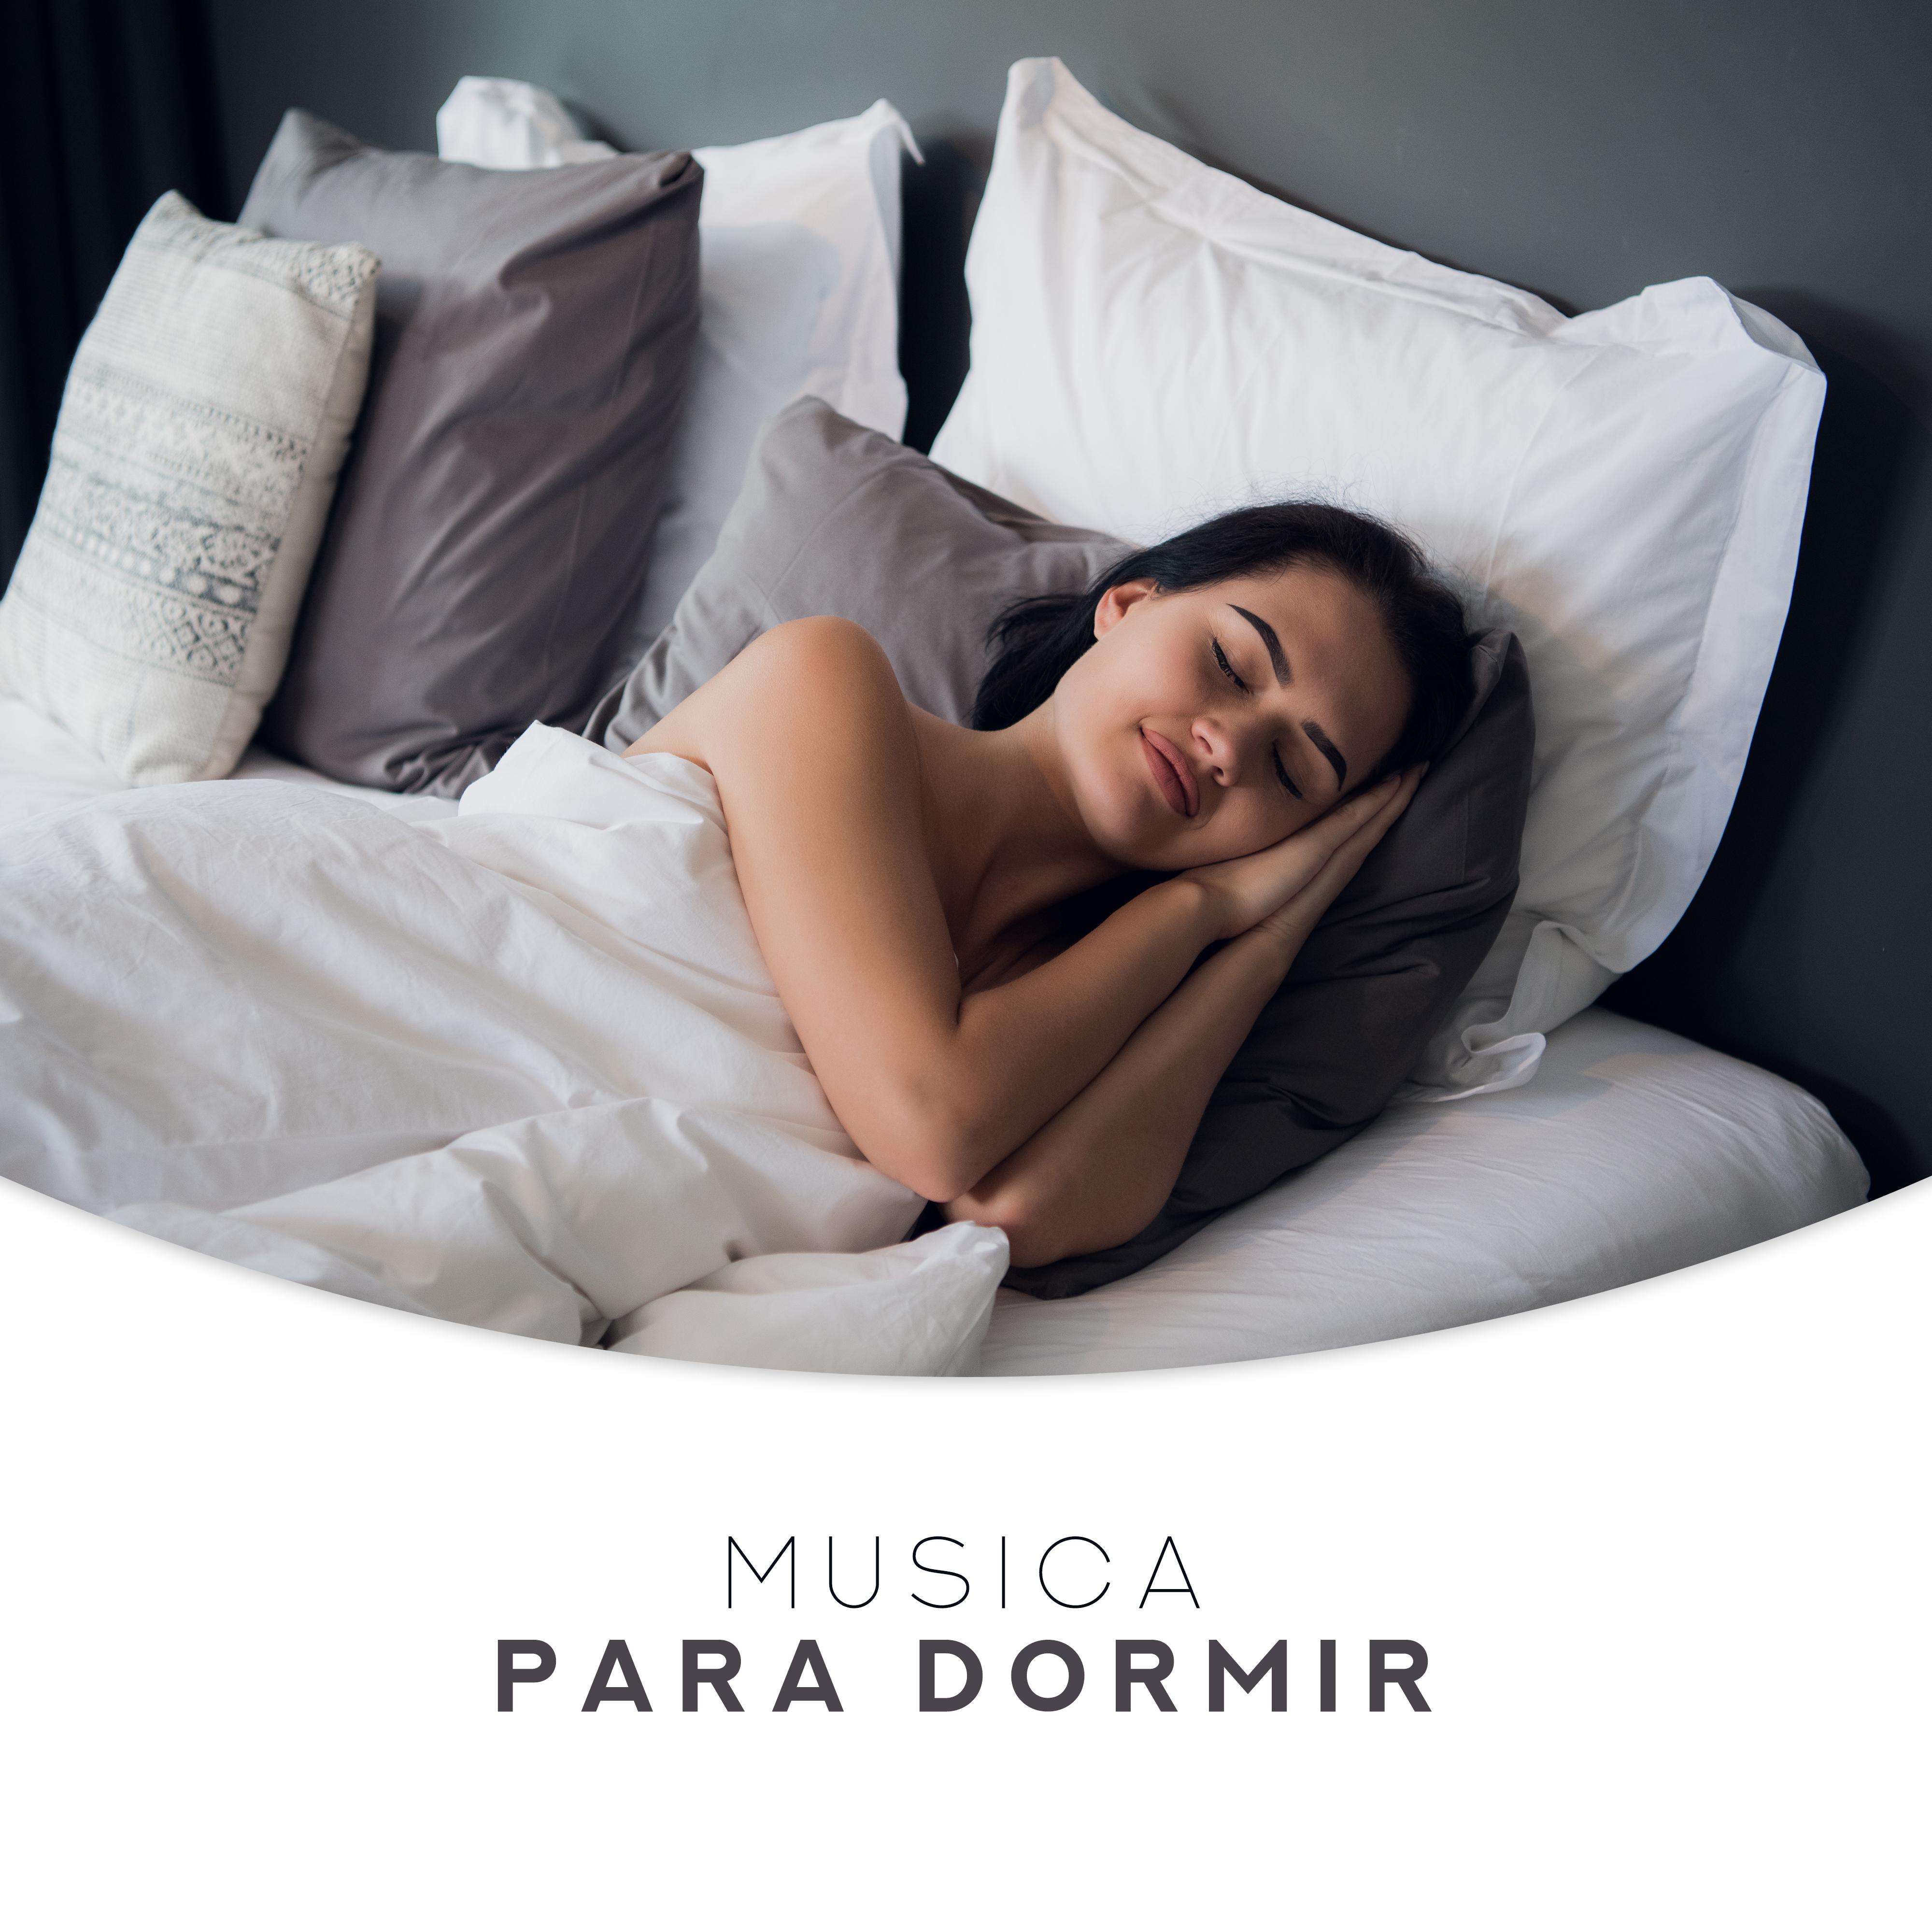 Musica para Dormir: 15 Melodi as Somnolientas para Buenas Noches a un Sue o Profundo y Saludable, Mu sica Delicada y Sutil para el Insomnio y Problemas para conciliar el Sue o